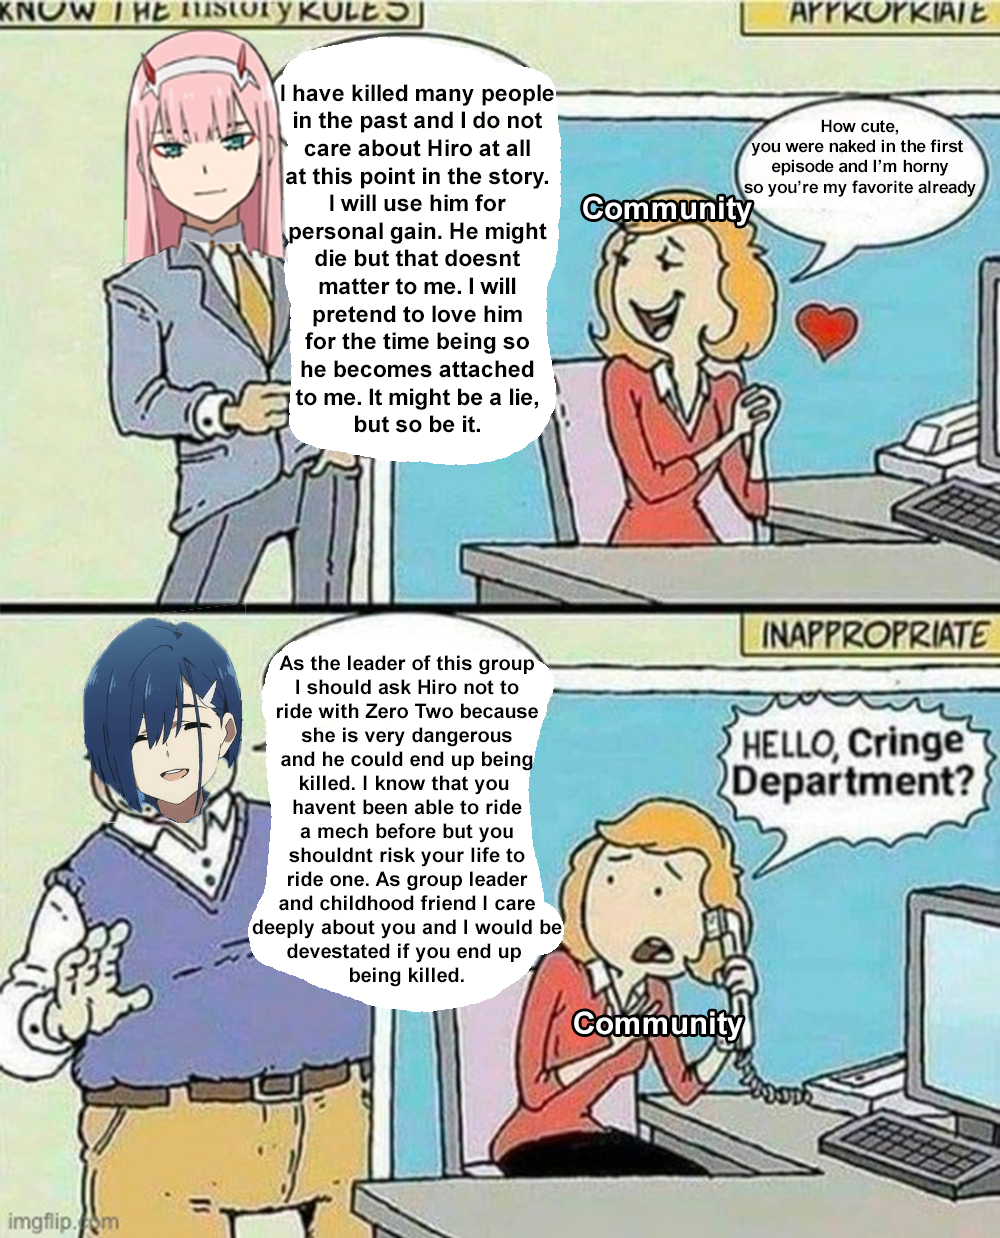 Ichigo did nothing wrong